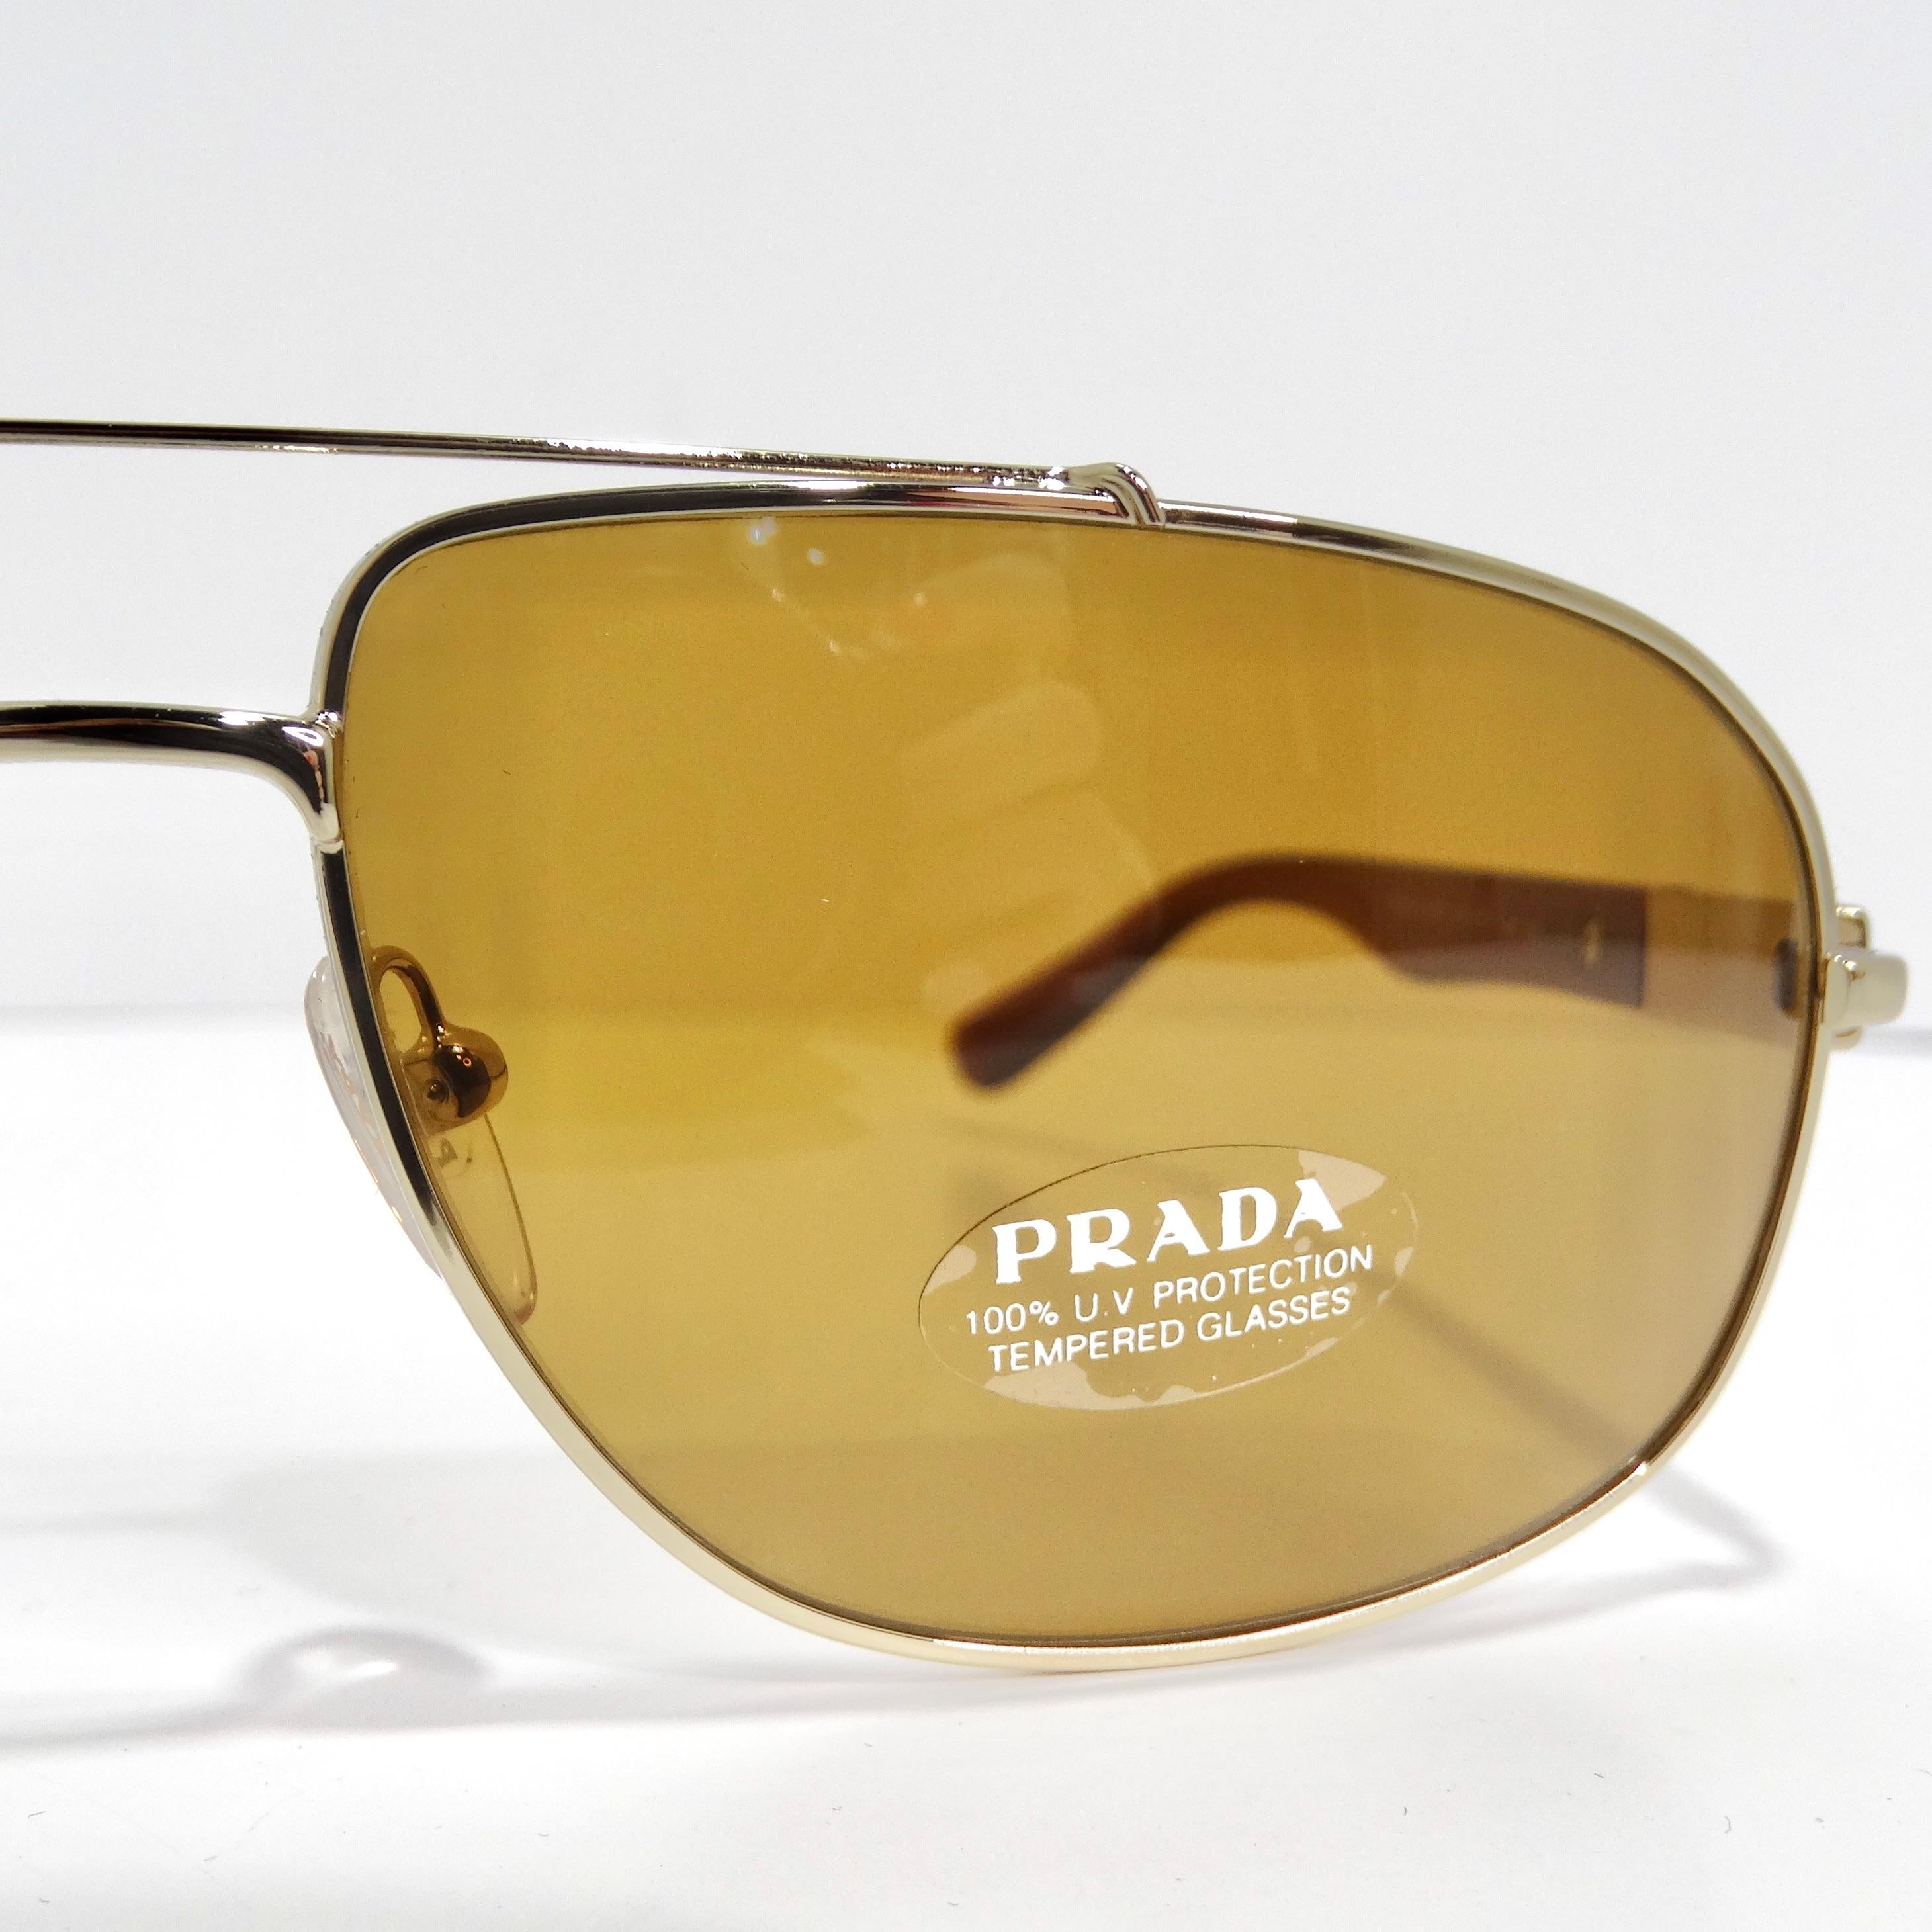 Rehaussez votre collection de lunettes avec les lunettes de soleil Aviator Prada 1990 Brown Gold Tone, un style aviateur classique qui dégage un chic et une sophistication intemporels. Ces lunettes de soleil présentent de fins bords dorés associés à